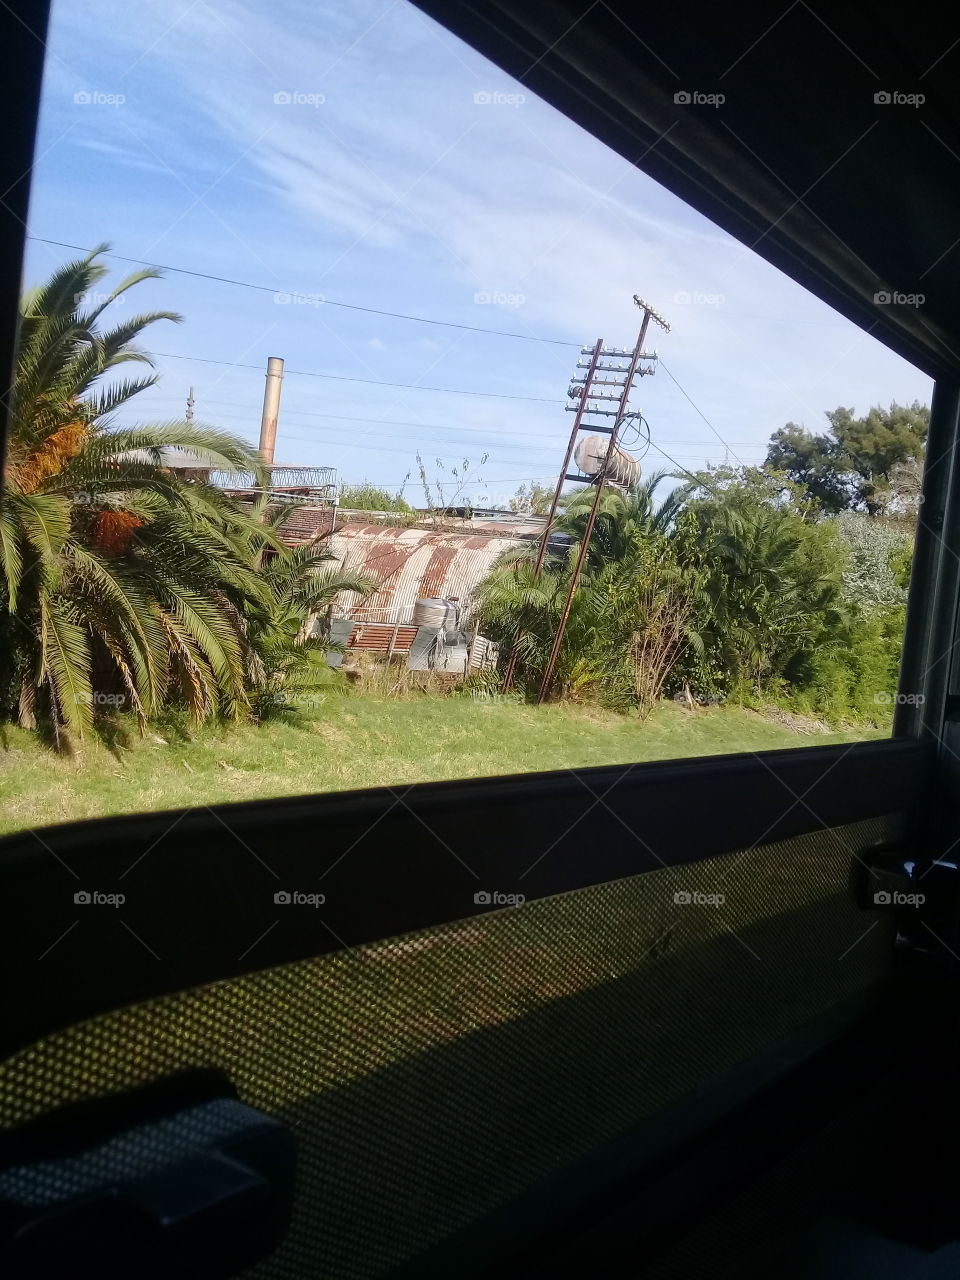 vista de un paisaje rural capturado desde la ventanilla de un tren en movimiento en pleno paseo.